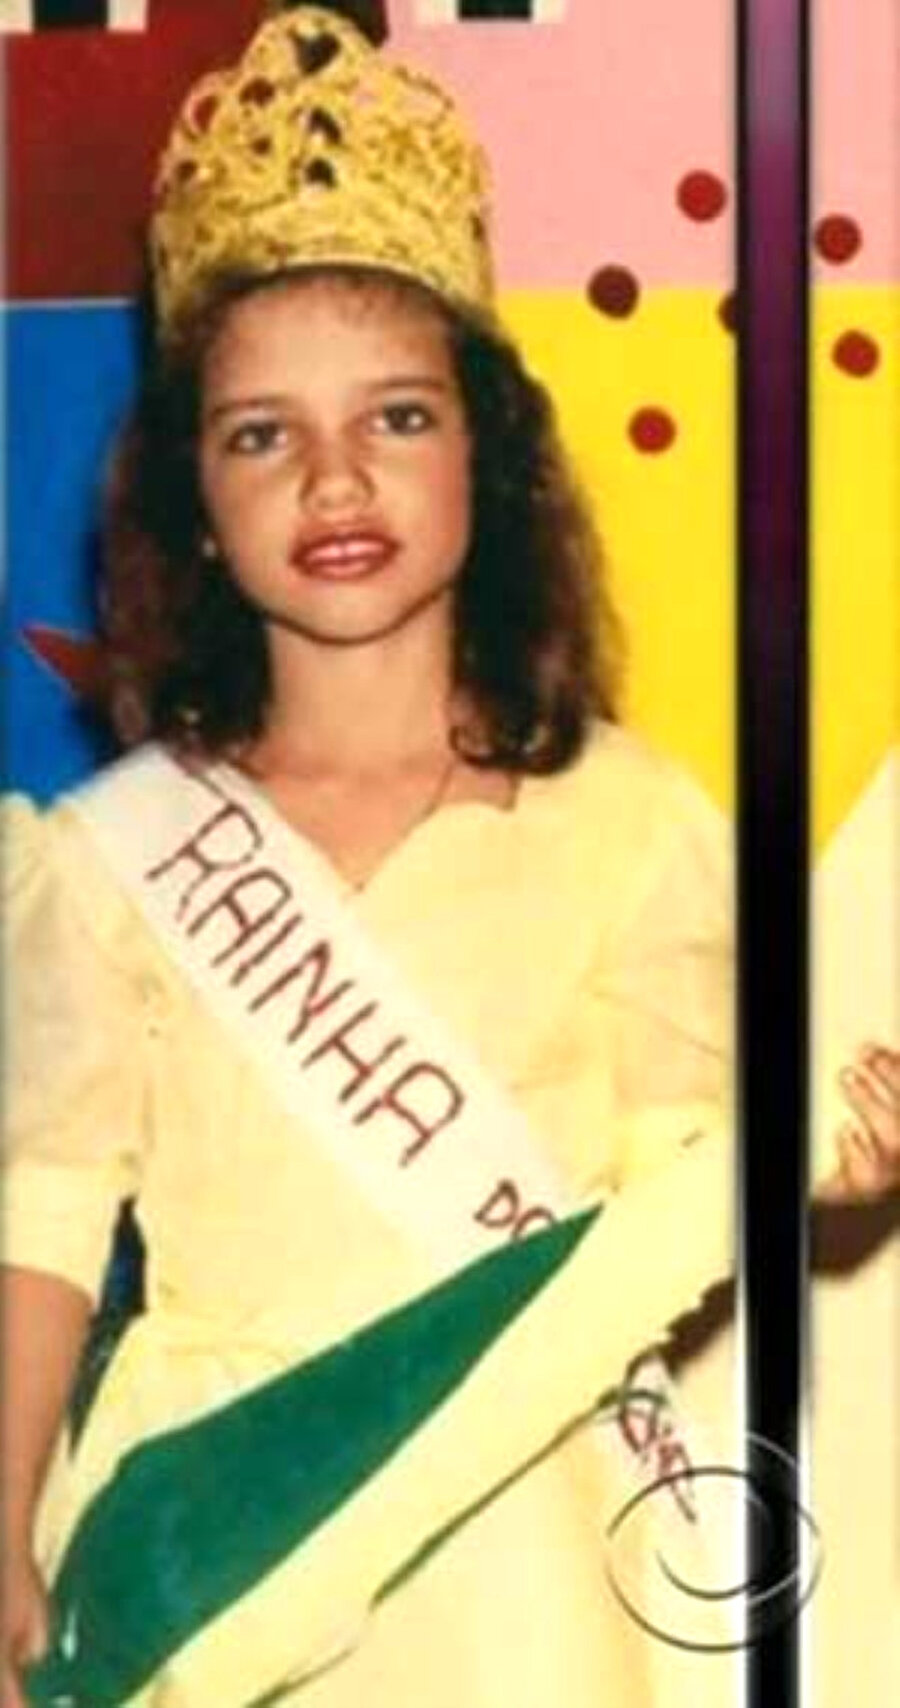 Siz tanıyabildiniz mi?
1981 yılında Brezilya'nın Salvador eyaletinde dünyaya gelen Adriana Lima'nın çocukluk fotoğrafını görenler gözlerine inanamıyor.